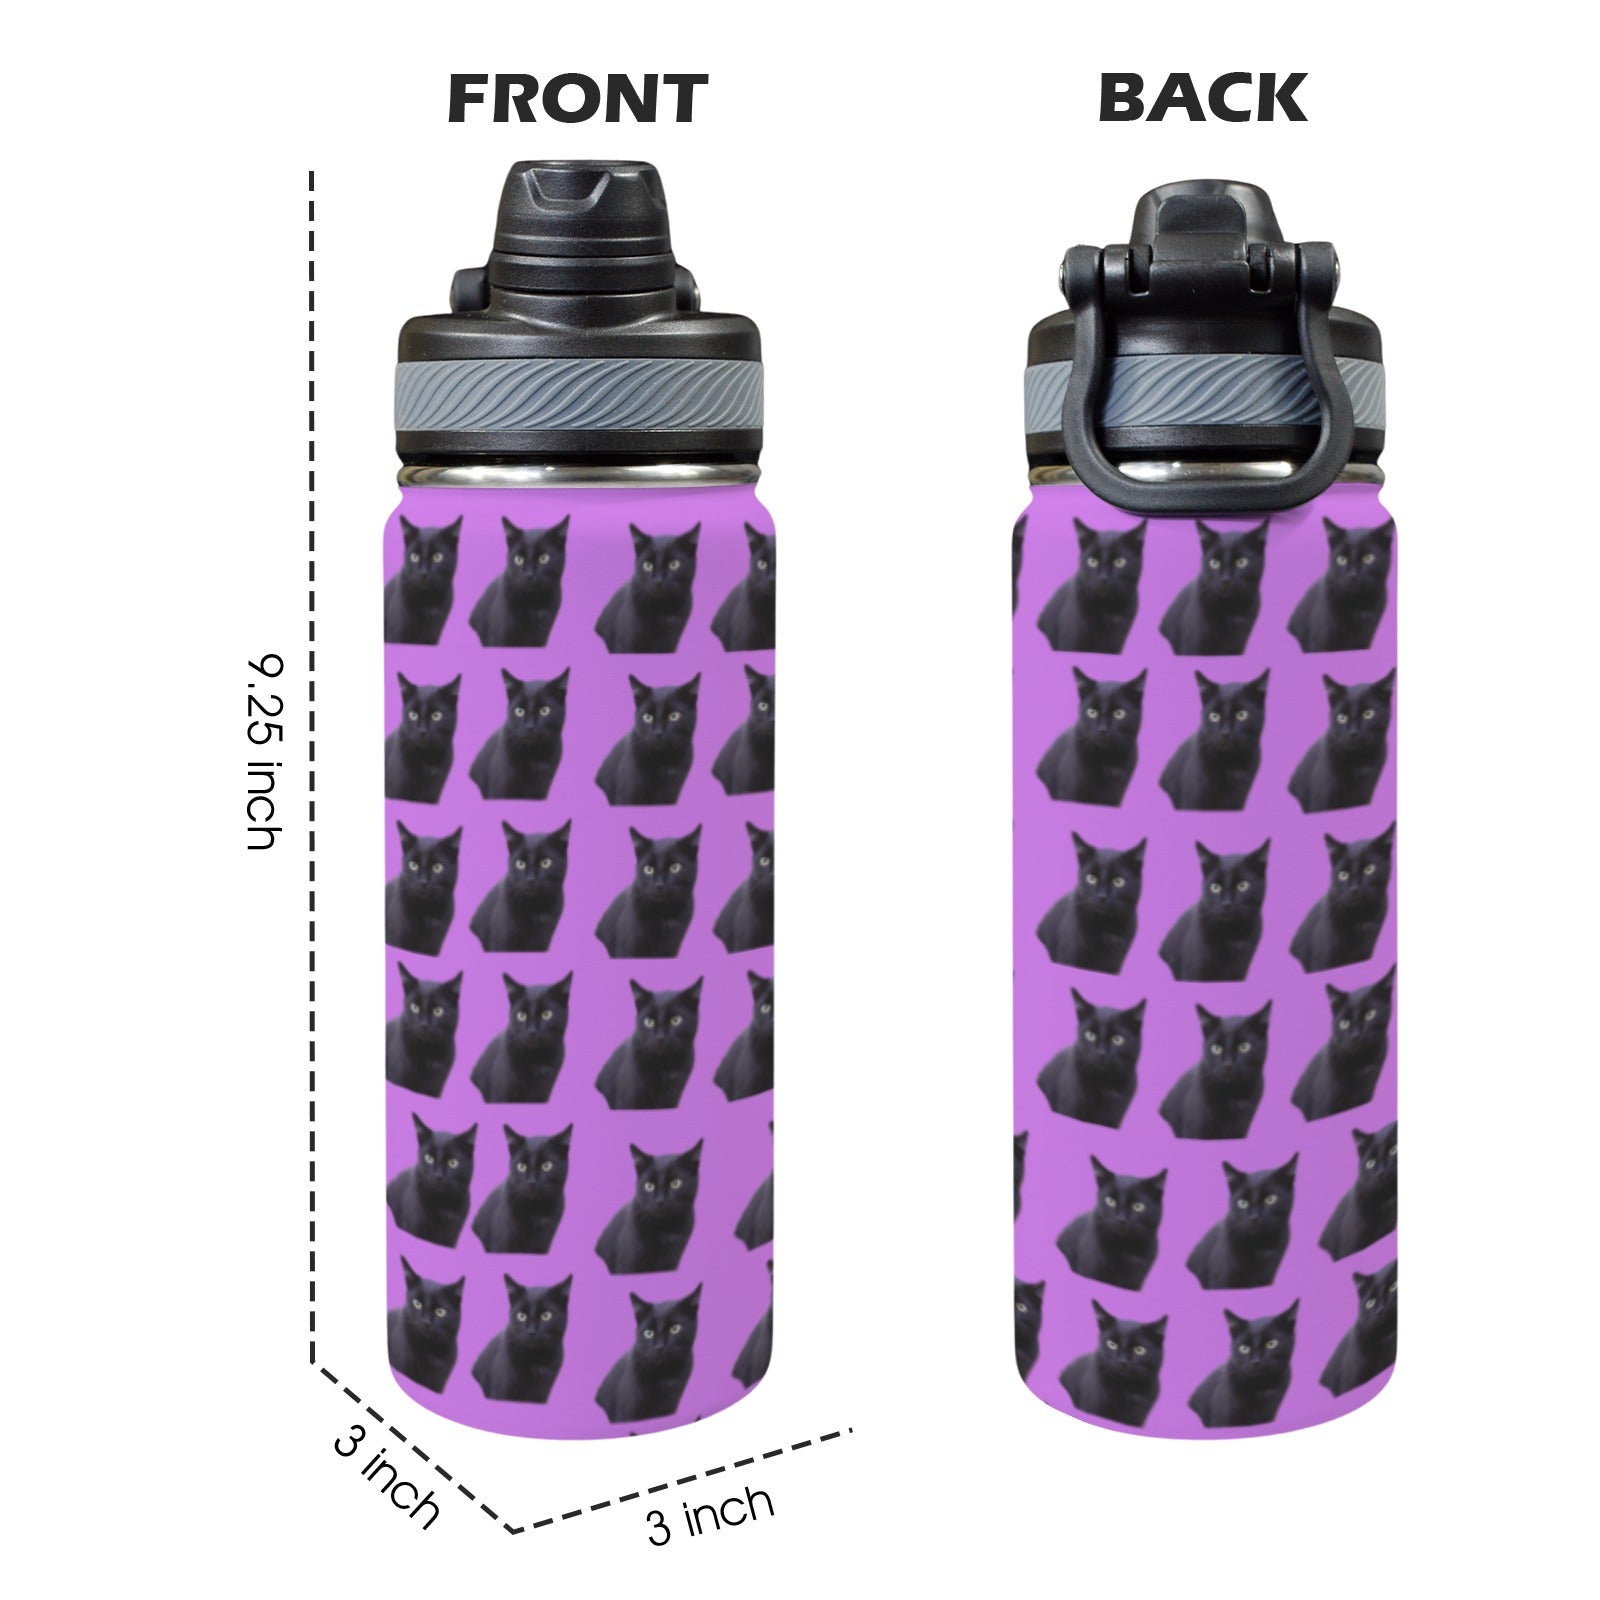 Black Cat Water Bottle